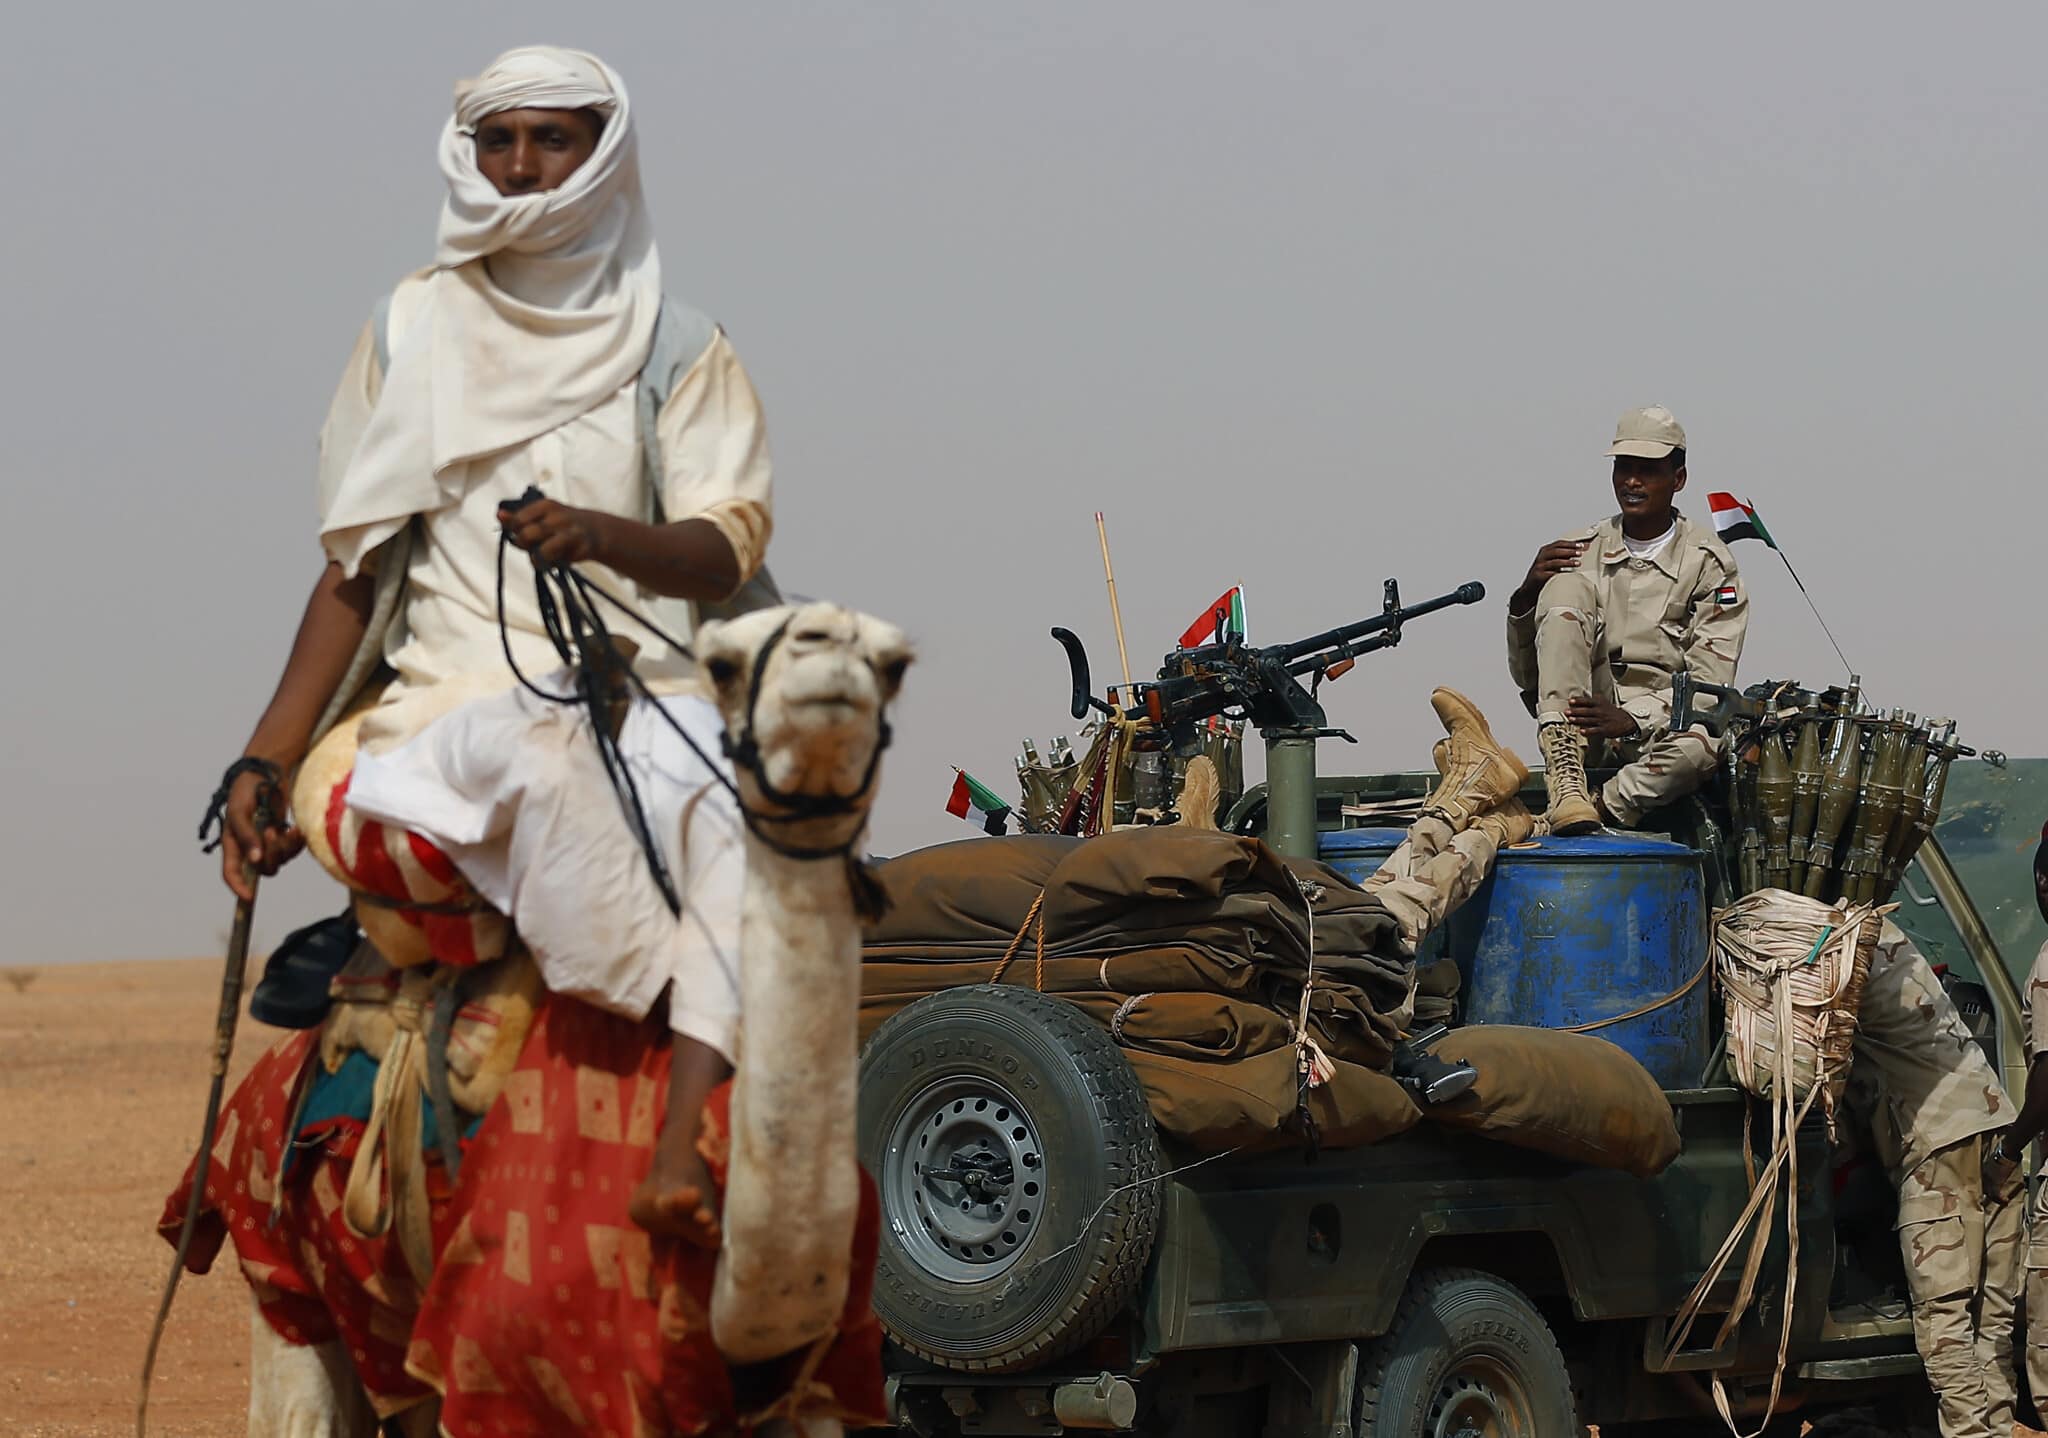 הגנרל מוחמד חמדאן דגלו, סגן ראש המועצה הצבאית הסודאנית, יושב על רכבו, מוקף בחיילי יחידת כוחות הסיוע המהיר, במהלך מצעד שבטי בתמיכת הצבא במחוז הנילוס המזרחי בסודאן, 22 ביוני 2019